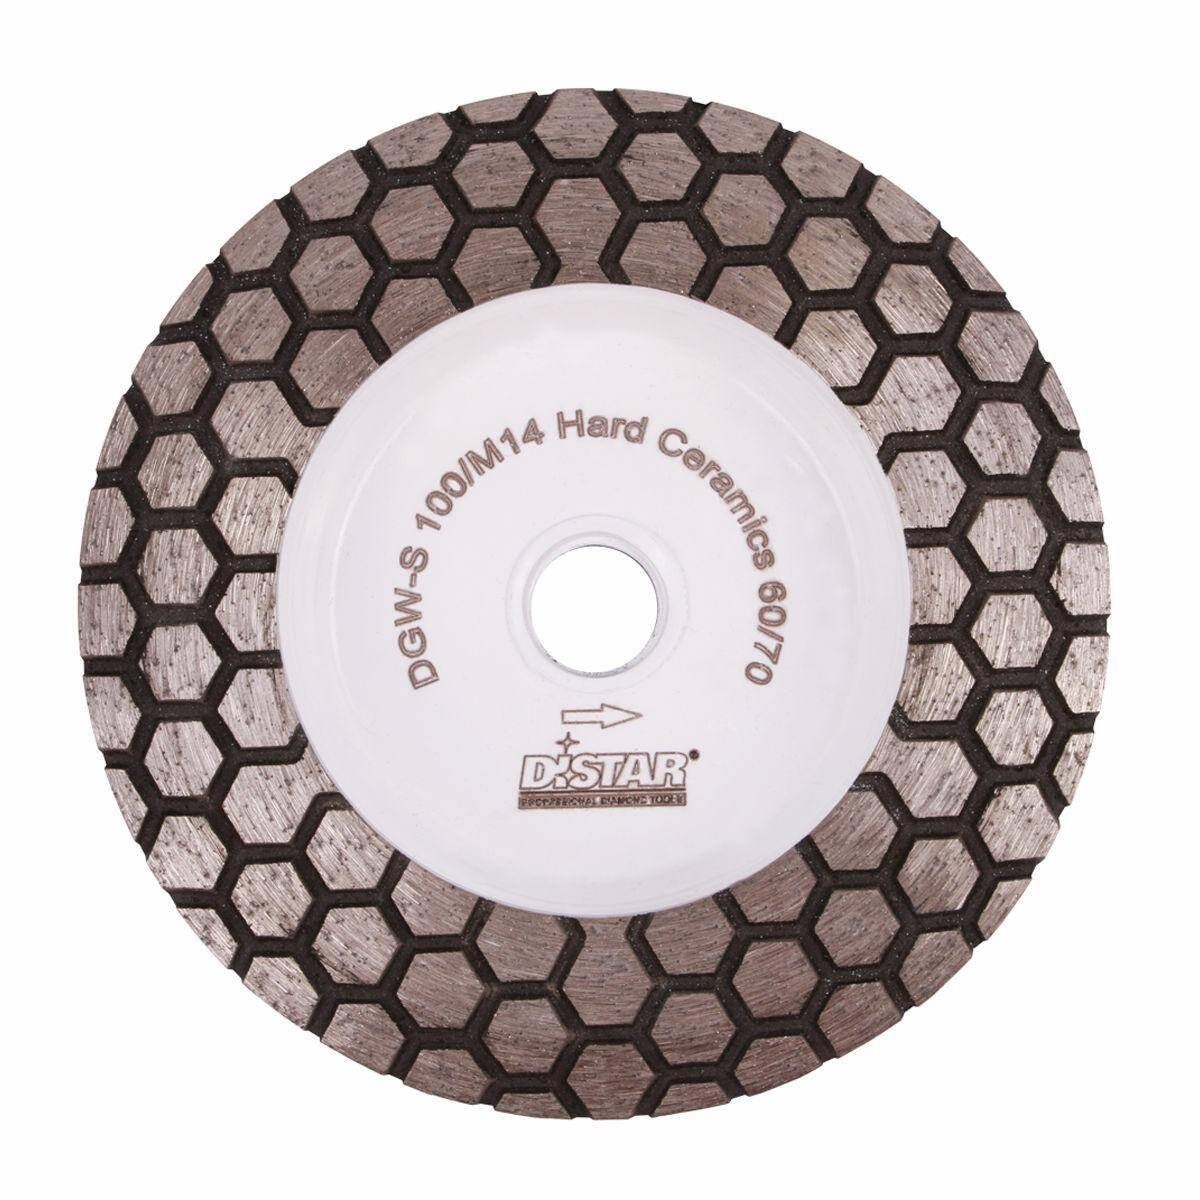 DiSTAR DGM-S 100/M14 Hard Ceramics 60-70 tarcza szlifierska do płytek ceramicznych gresu